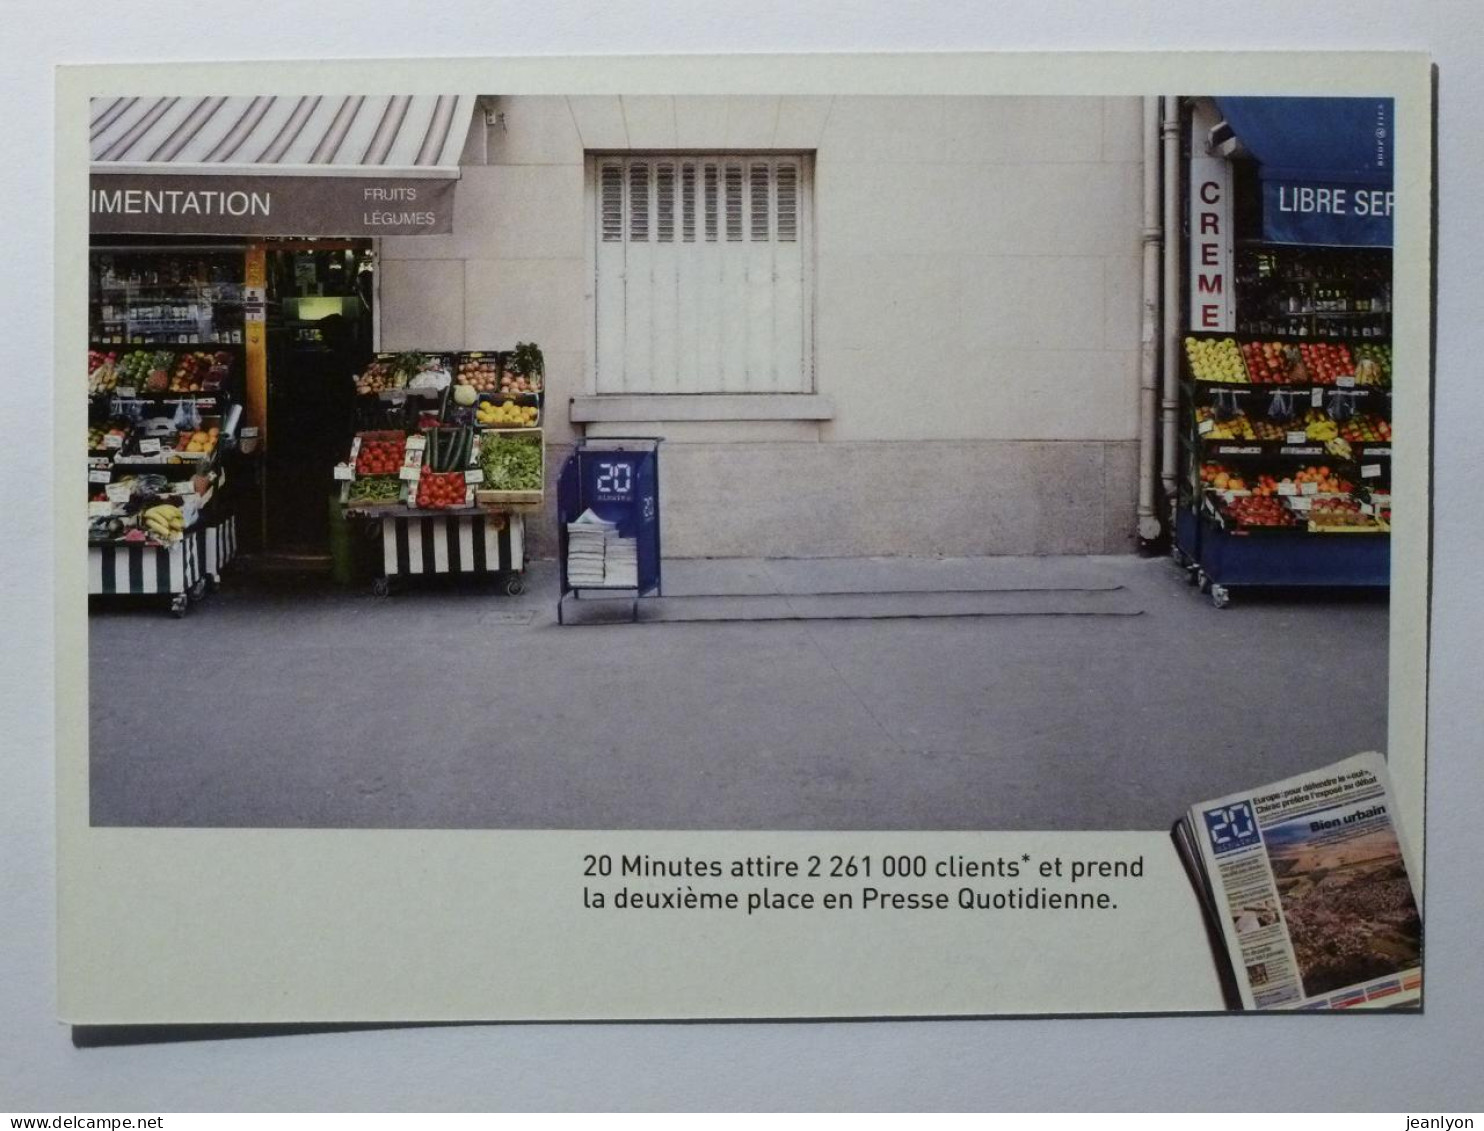 COMMERCE - Marchand FRUITS & LEGUMES à Coté Présentoire Journal 20 Minutes - Carte Publicitaire - Marchands